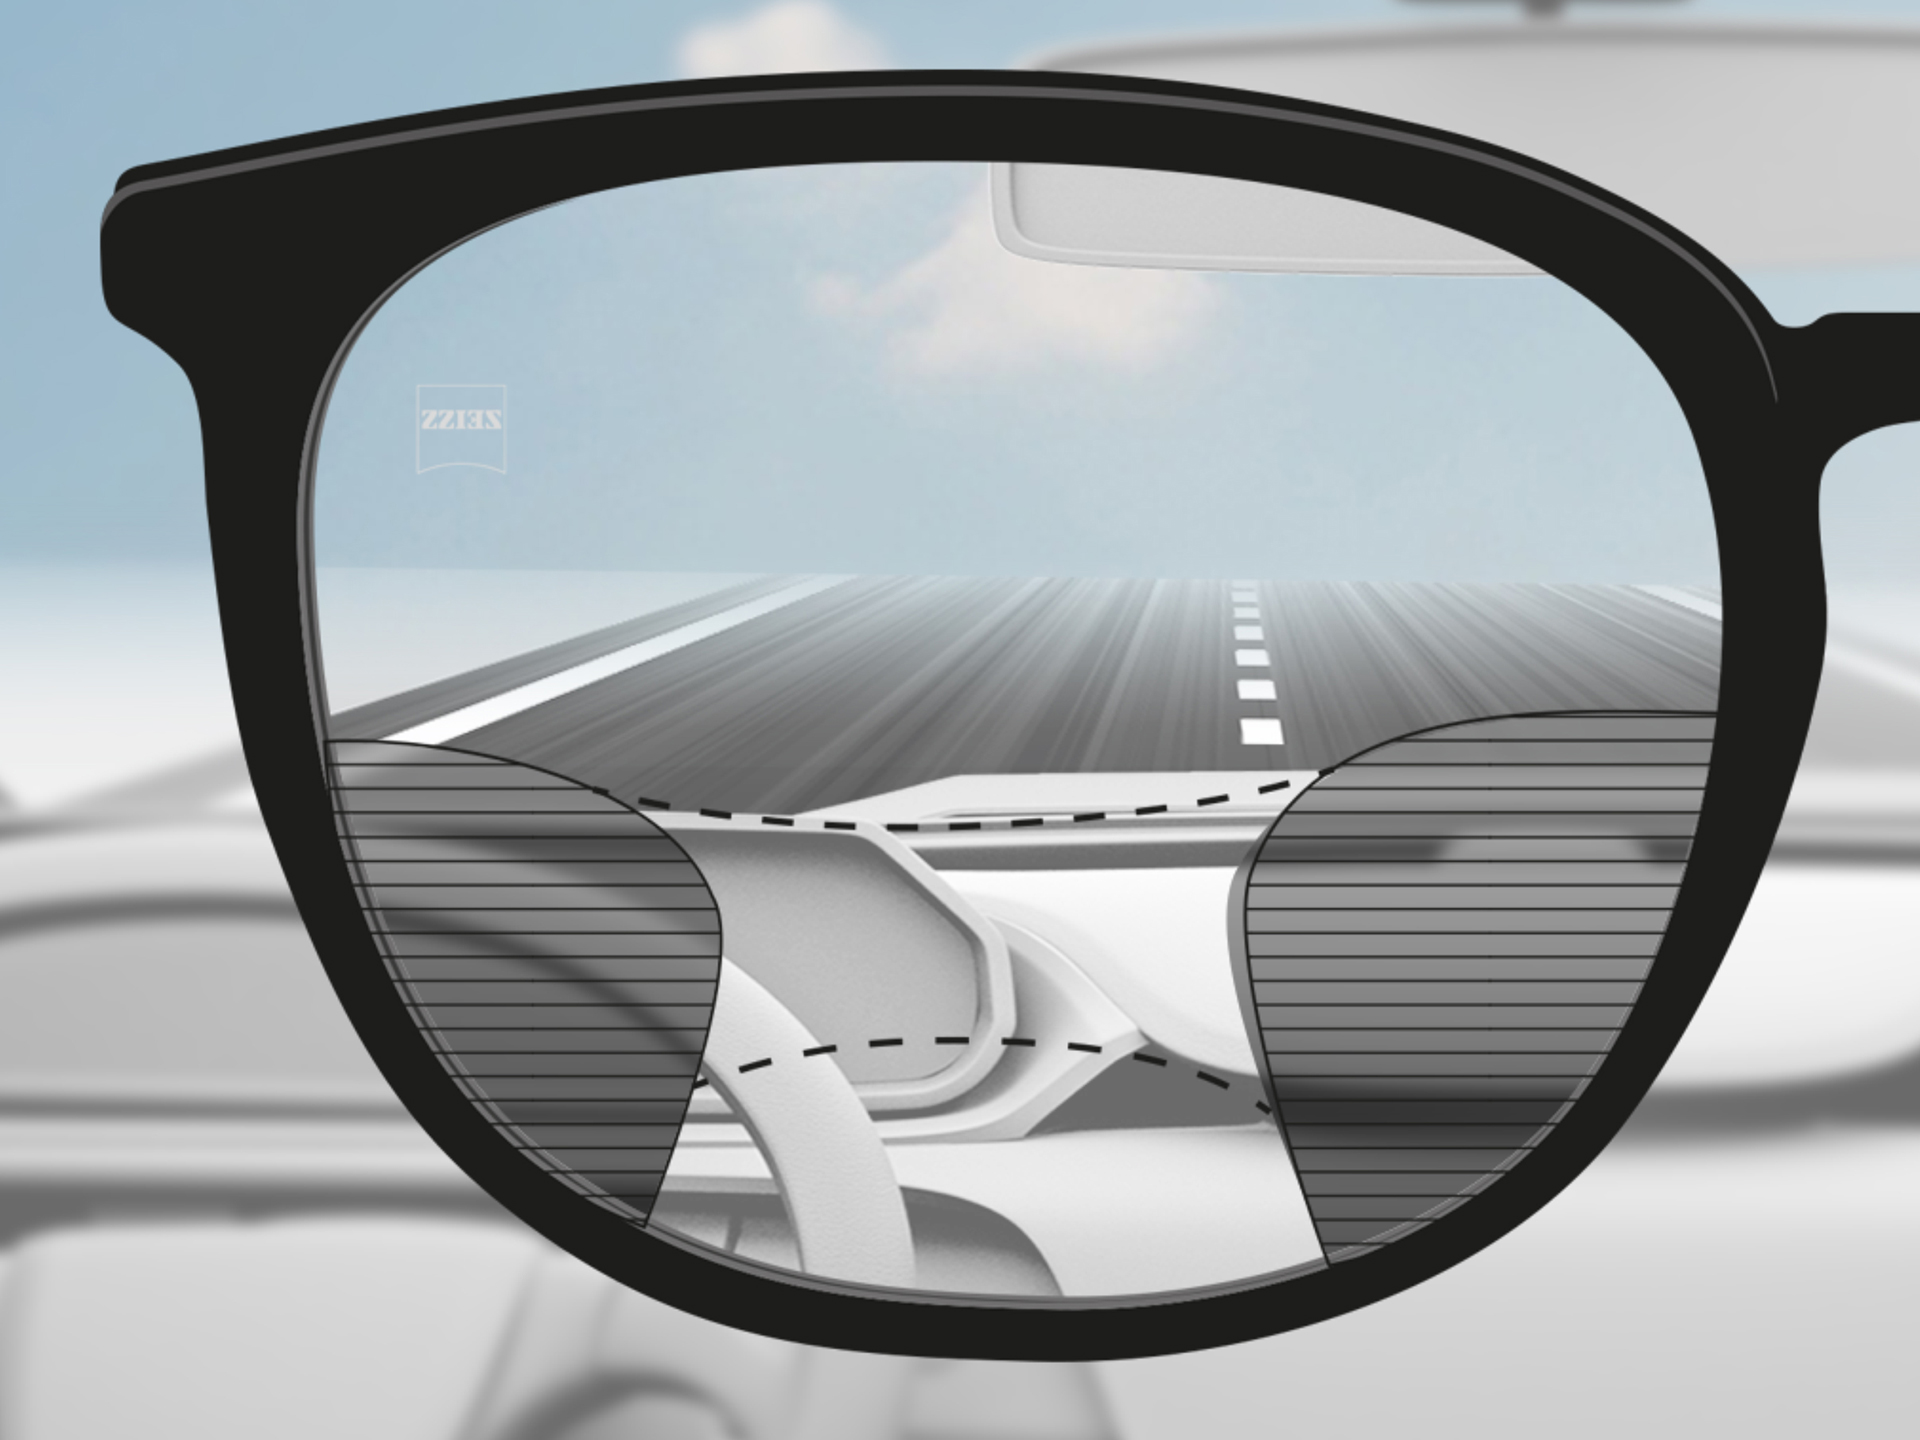 Immagine con punto di vista attraverso una lente progressiva ZEISS DriveSafe: le zone di visione sono adattate in modo che il conducente veda bene sia la strada sia il cruscotto.